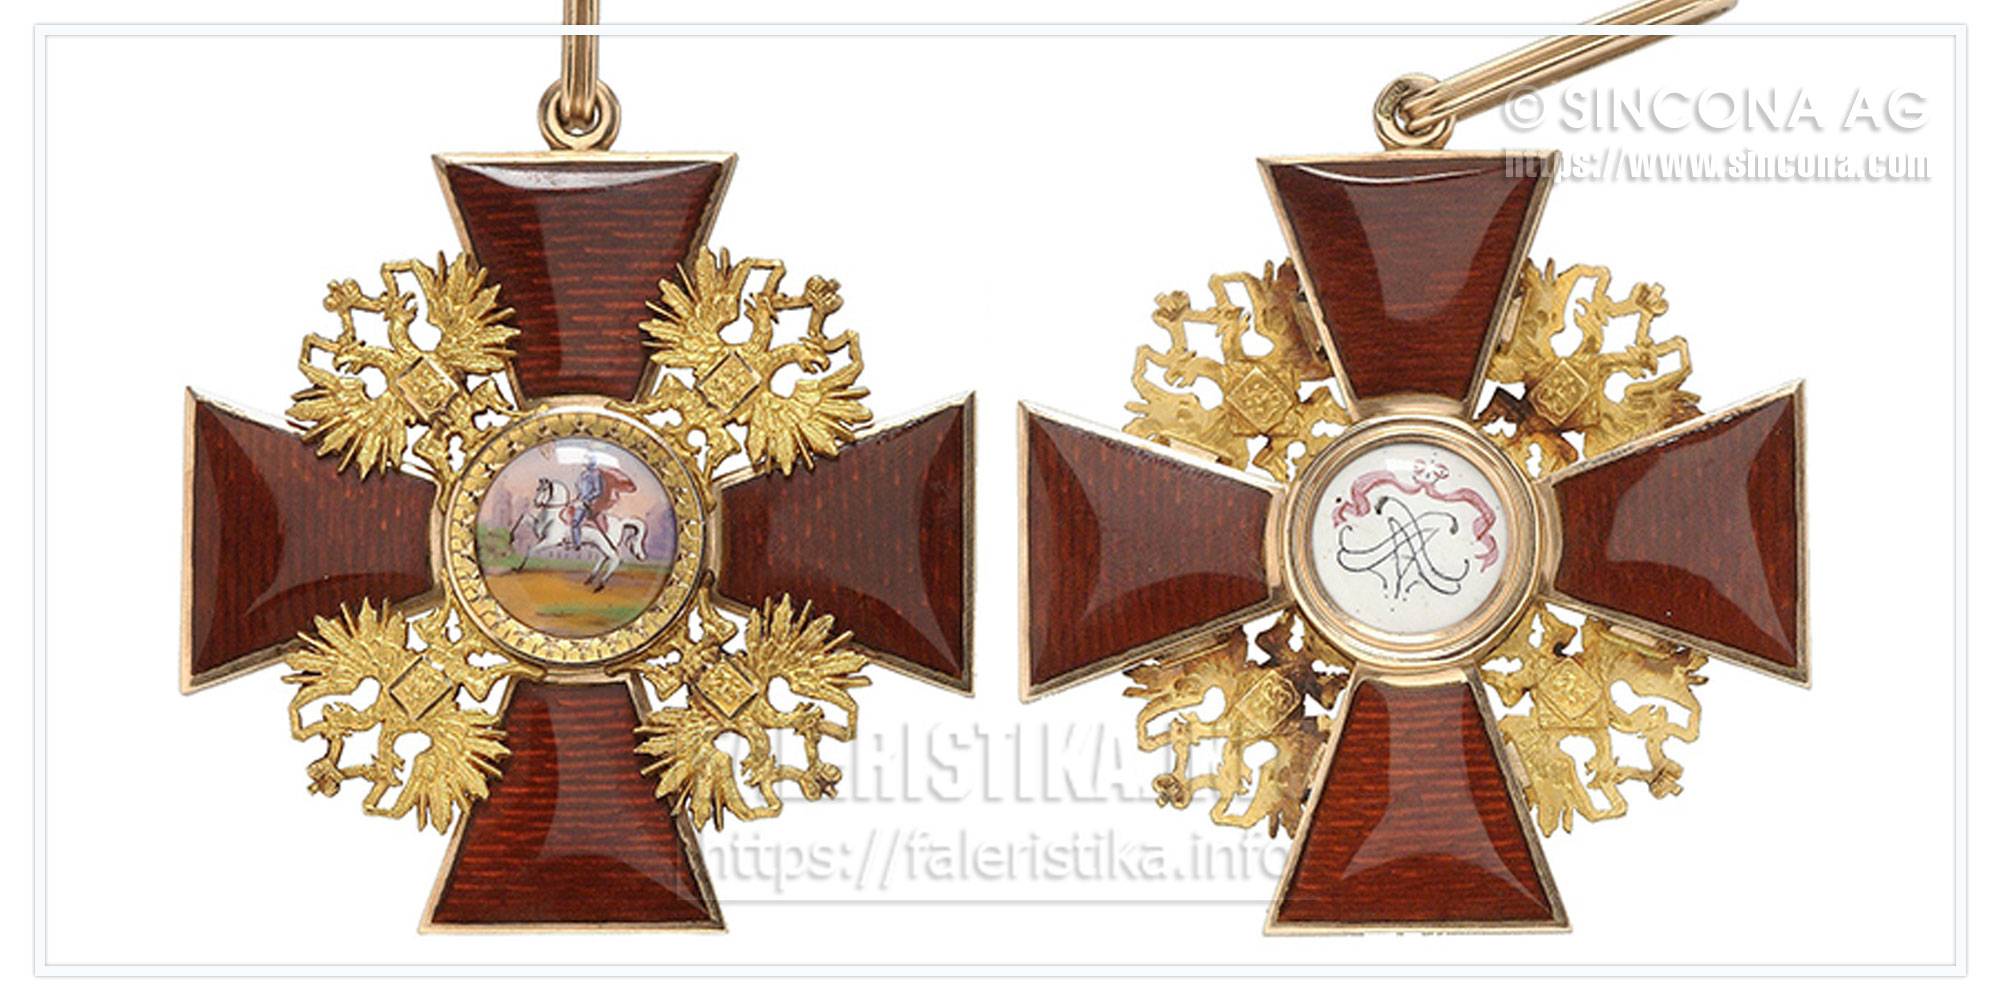 Орден святого благоверного князя александра невского: степени, разновидности, кавалеры и ориентировочная стоимость